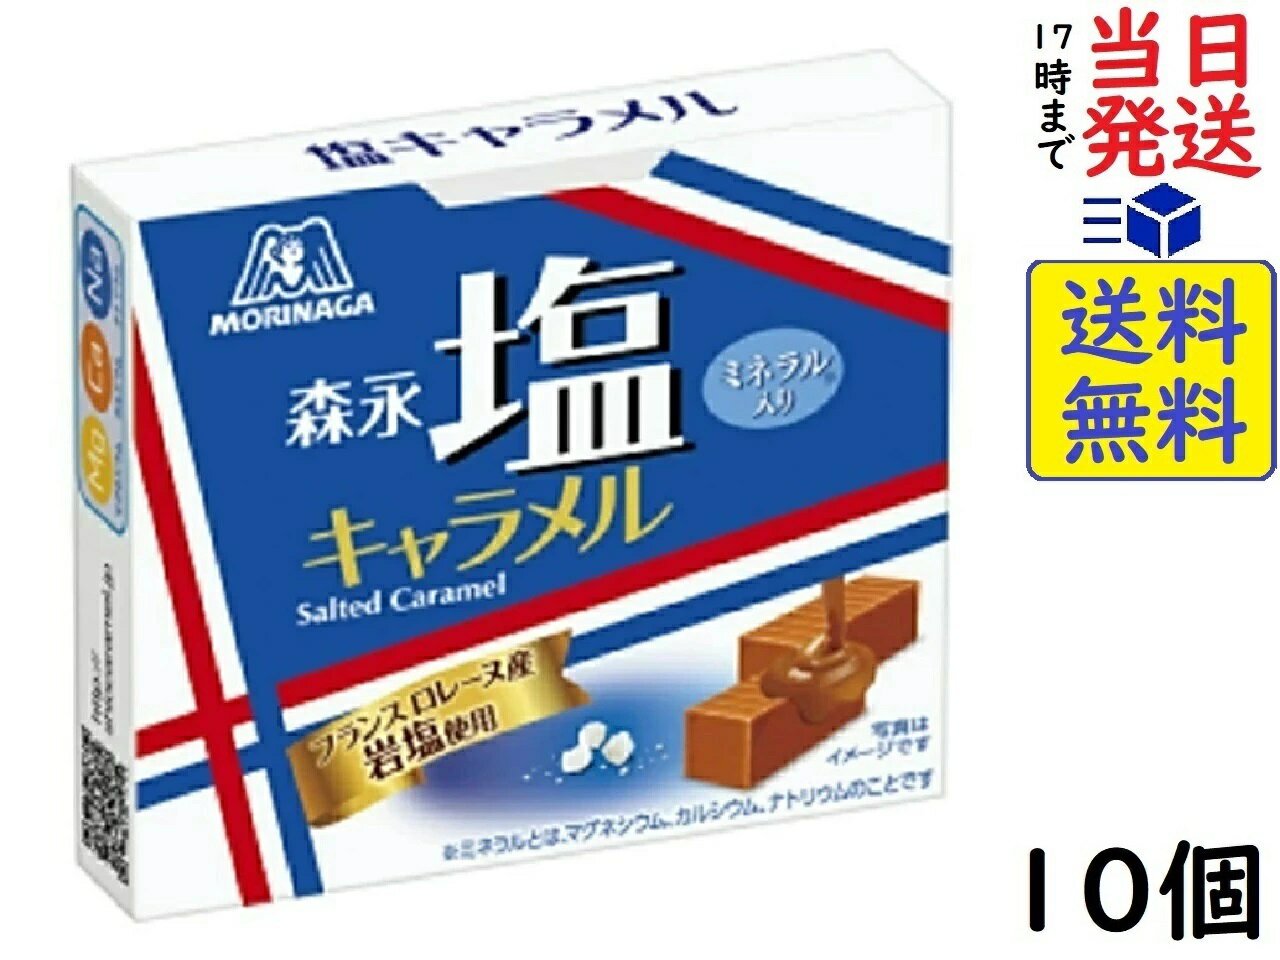 【心ばかりですが…クーポンつきます☆】森永製菓 塩キャラメル 12粒×10箱入